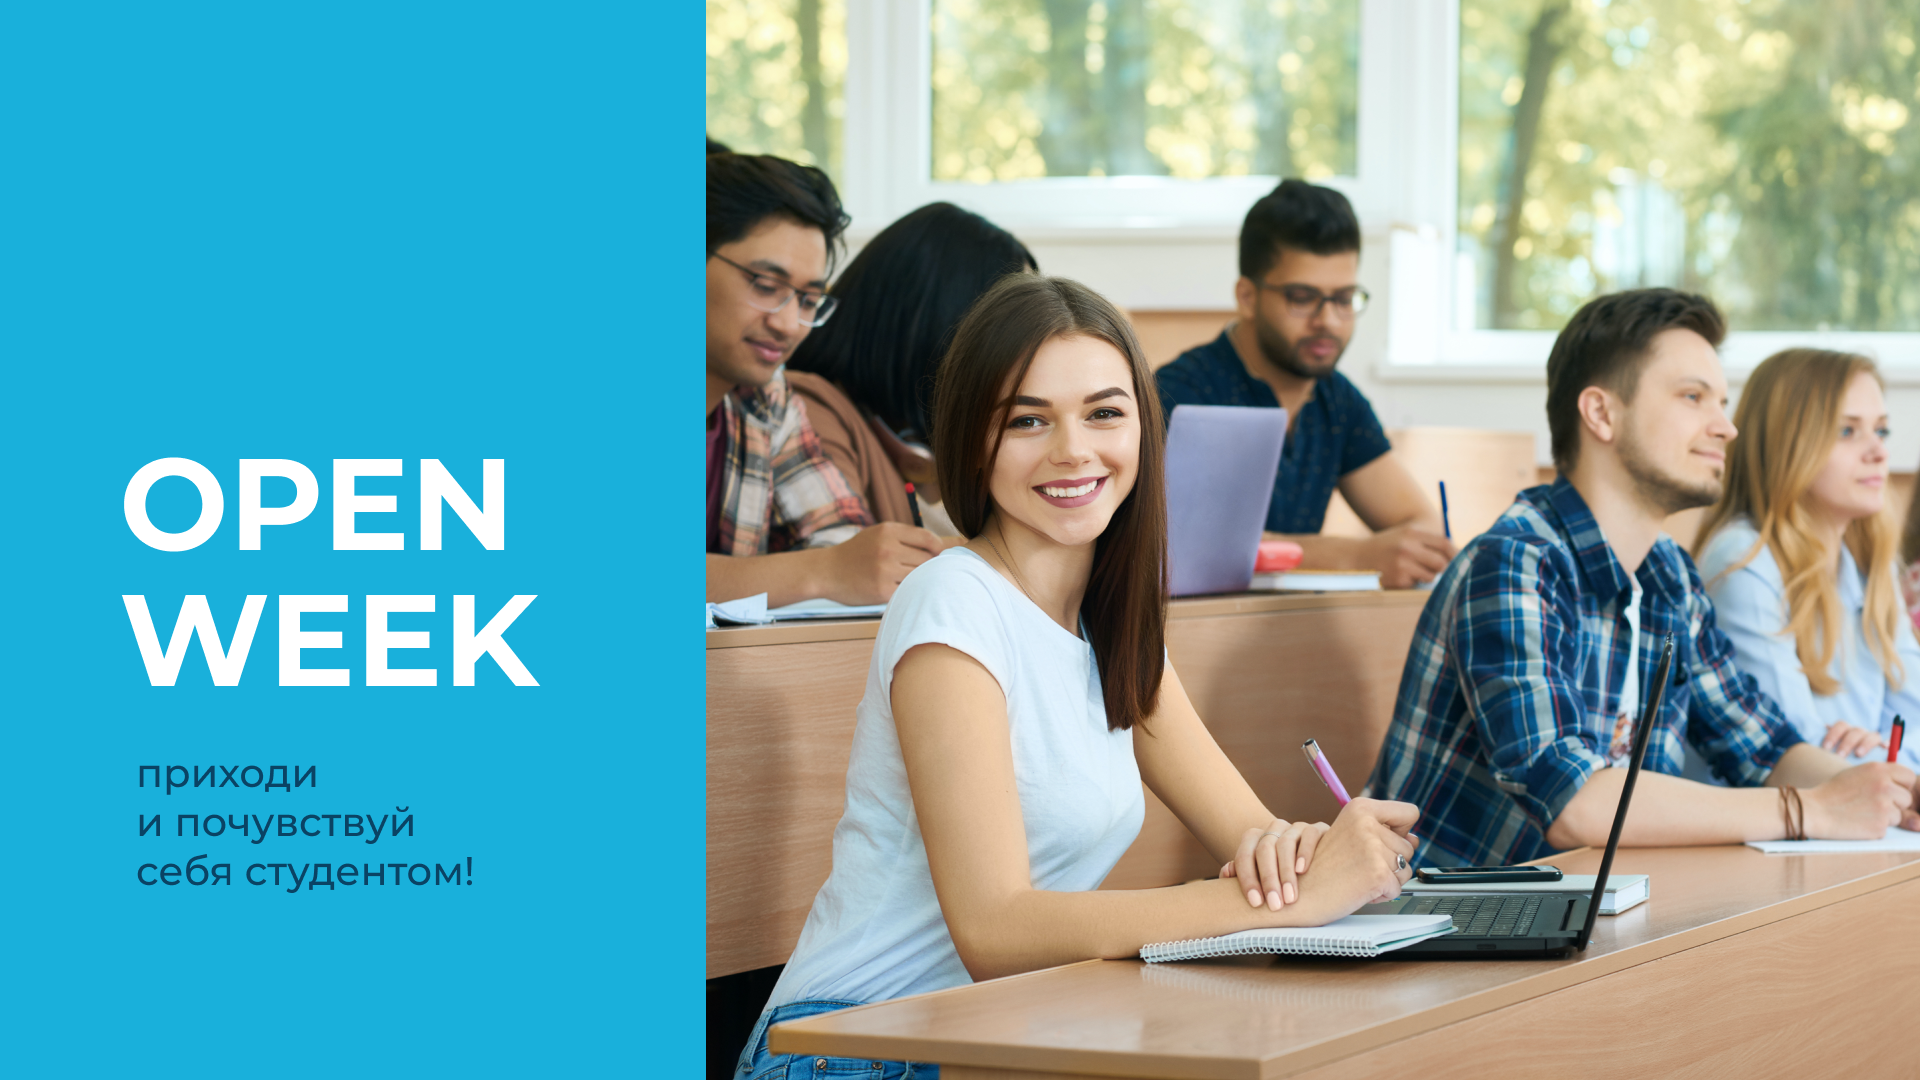 Open Week – Приходи и наслаждайся студенческой жизнью!